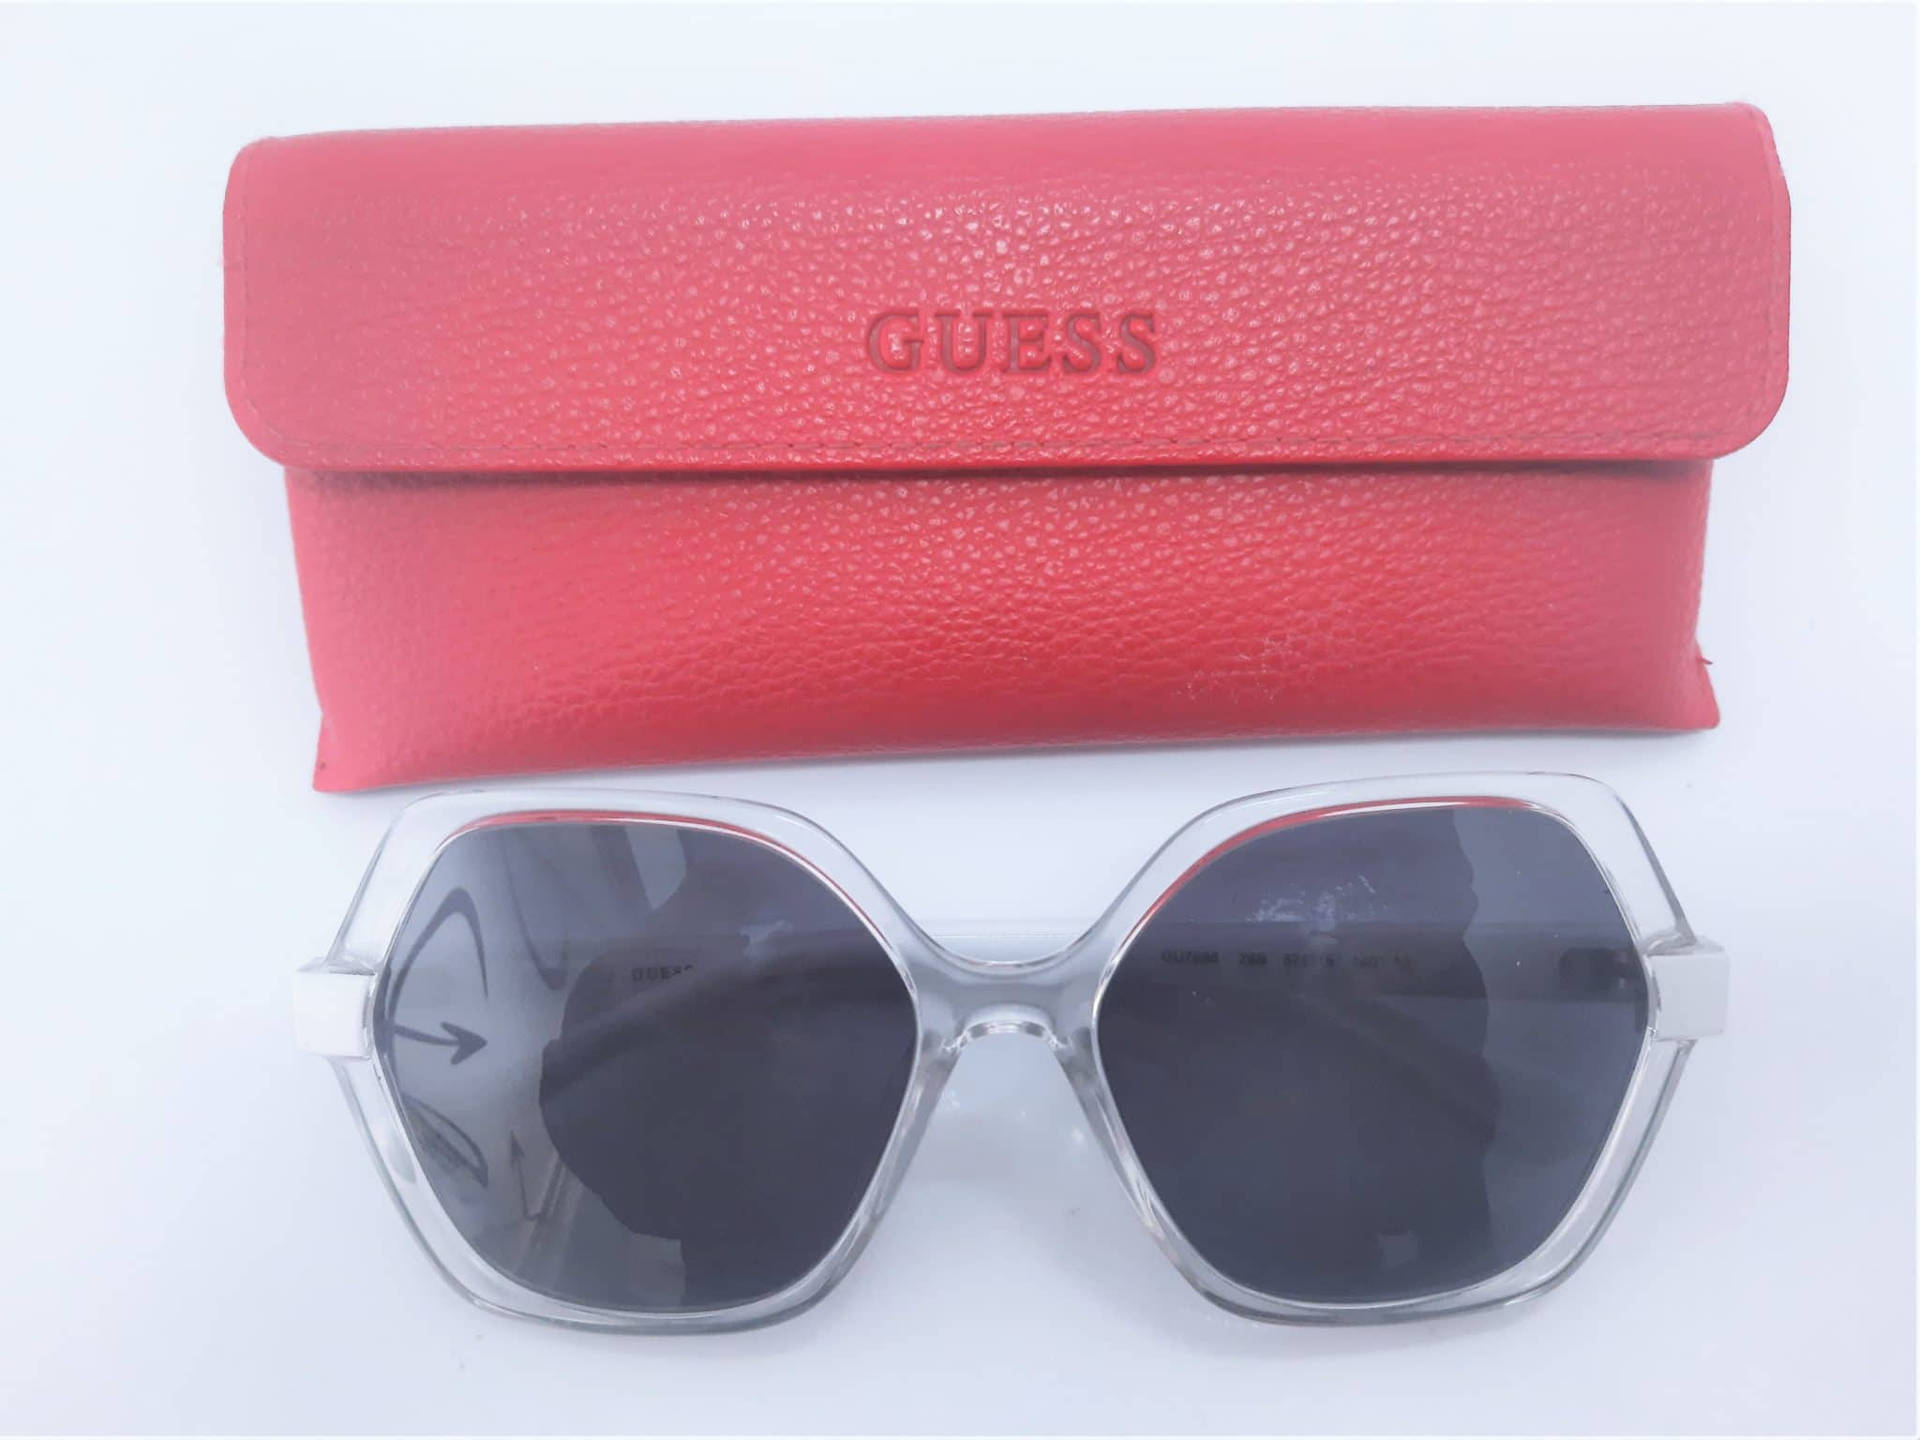 Sleekclear Guess Sunglasses - Occhiali Da Sole Guess Trasparenti E Eleganti Sfondo